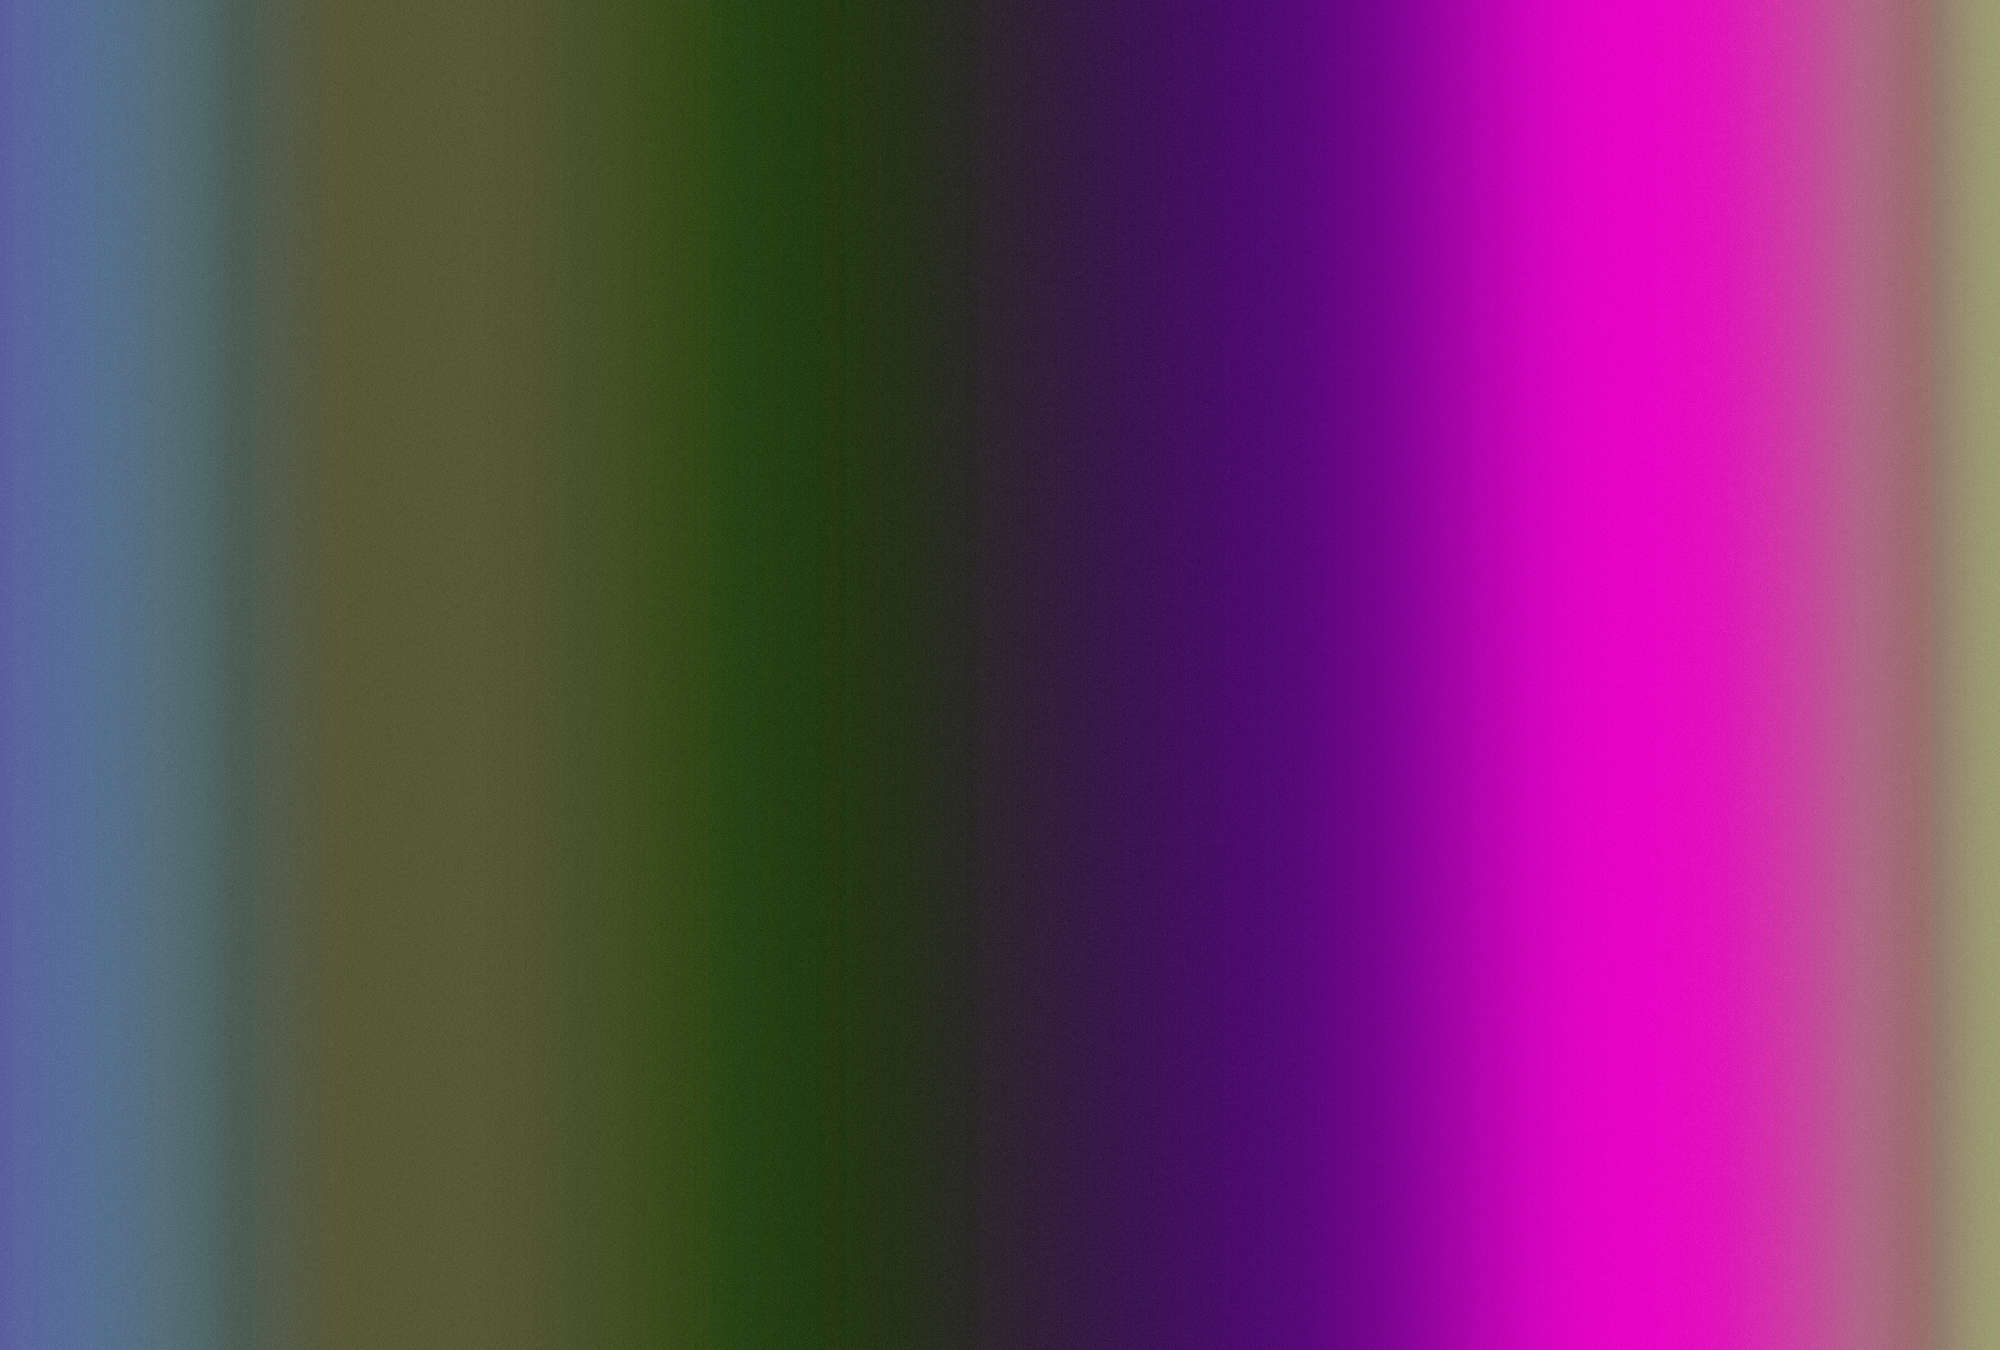             Over the Rainbow 3 - papier peint couleur spectre avec rose néon
        